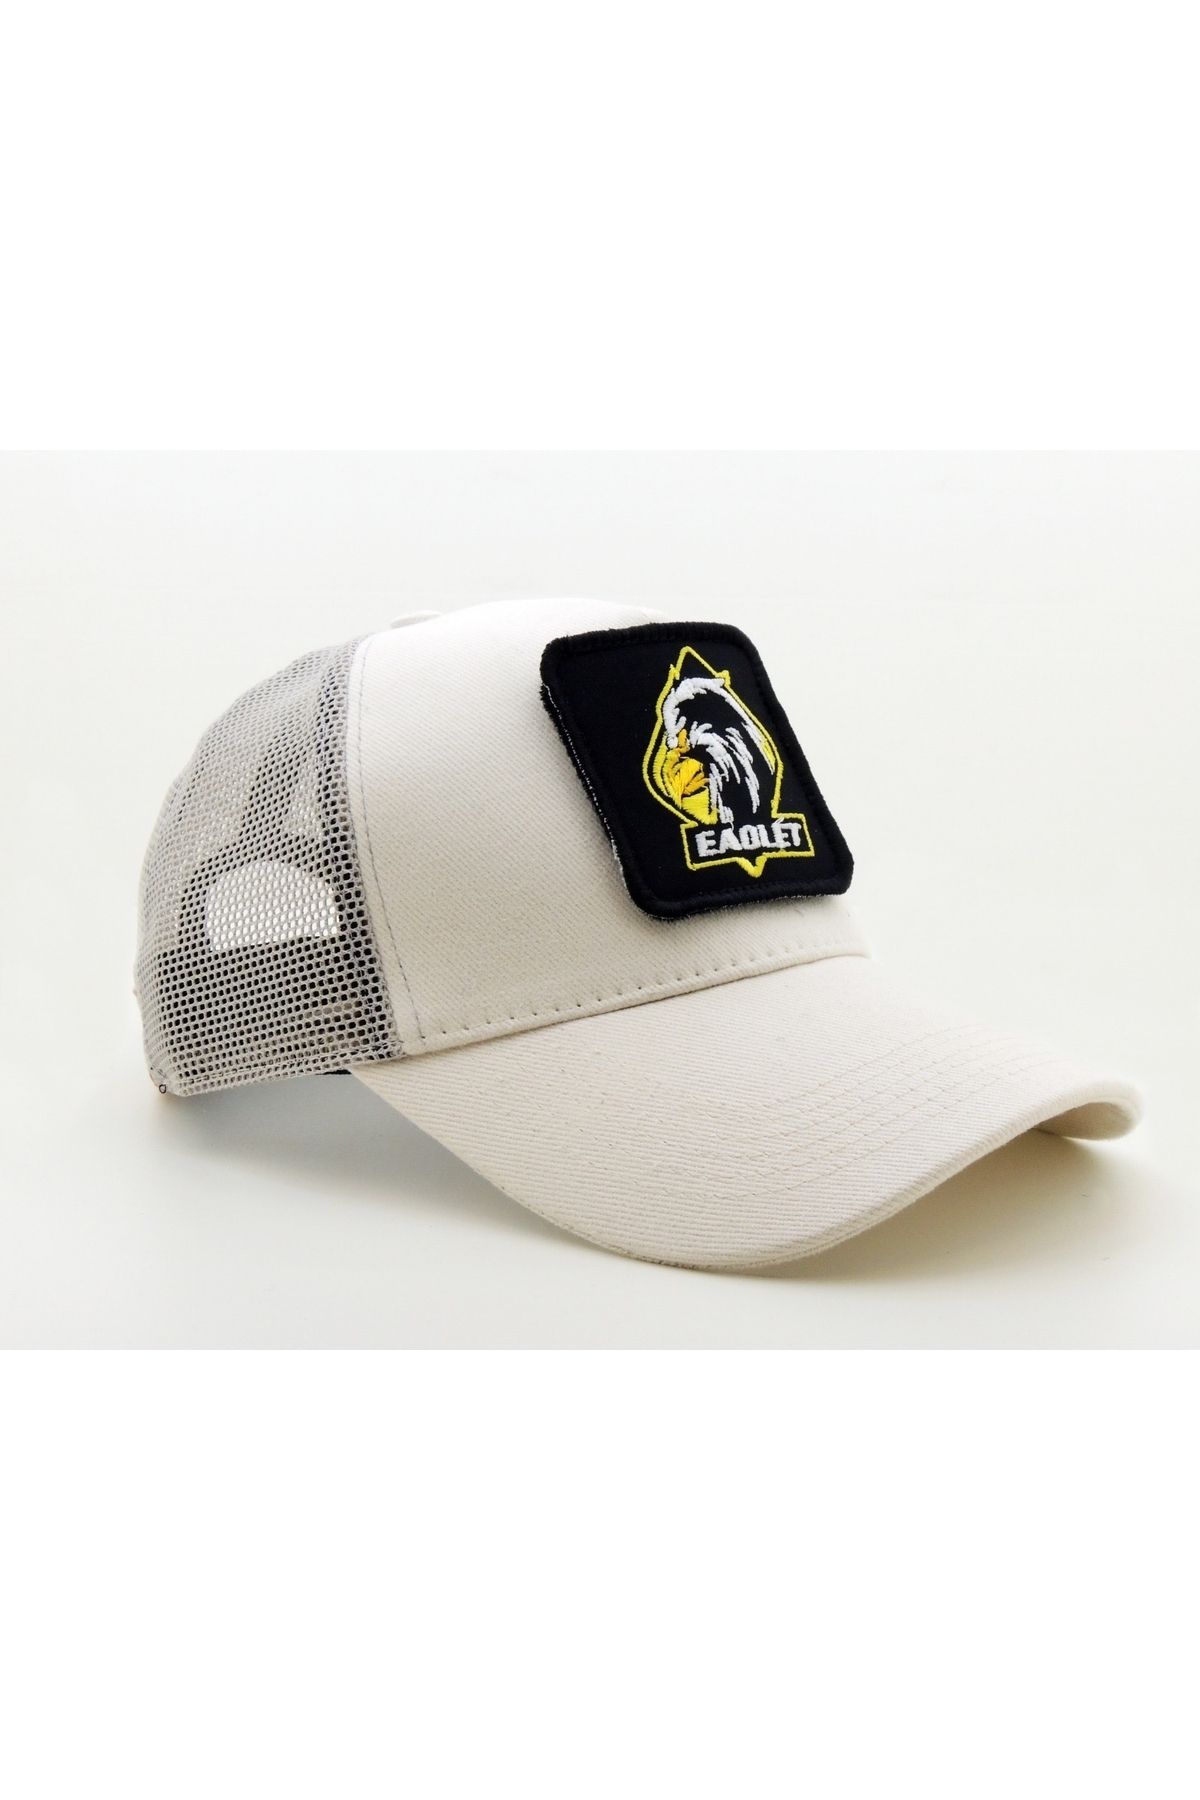 CityGoat Trucker (NAKIŞ) EAOLET Logolu Unisex Beyaz Şapka (CAP)